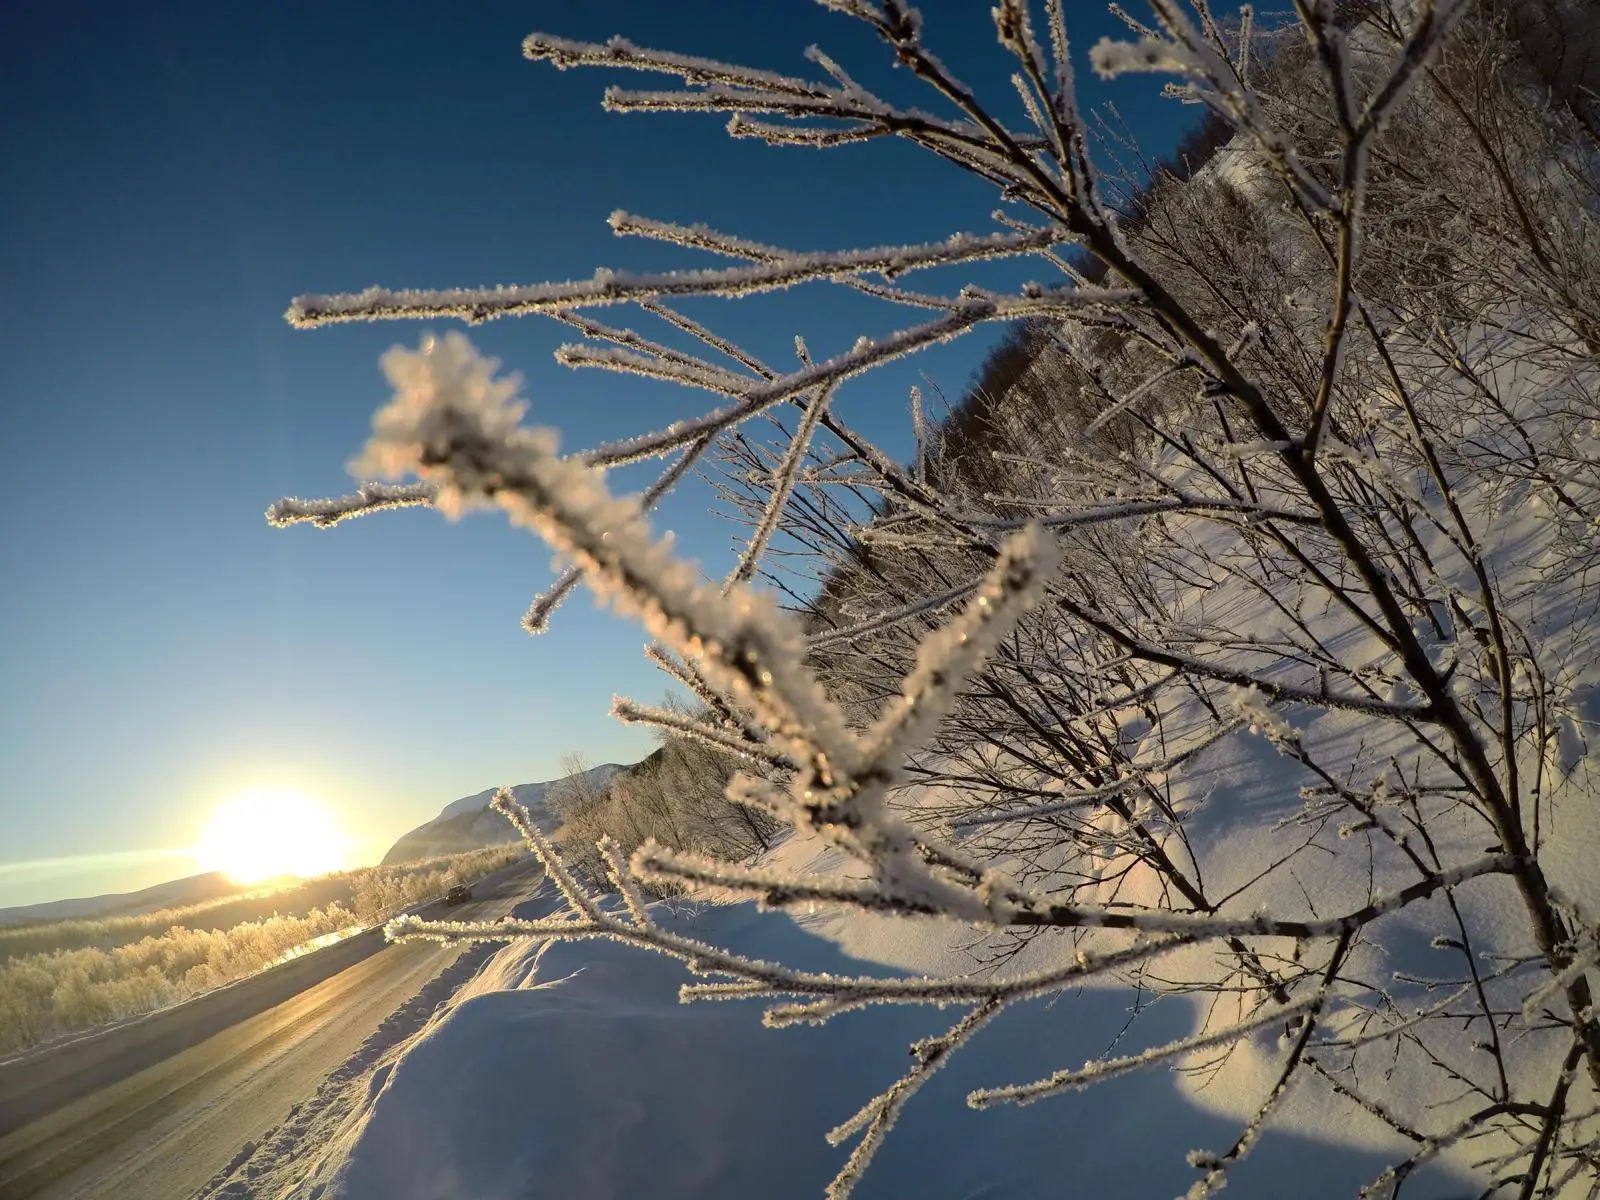 GoPro Hero 5 Testbild in Norwegen im Schnee